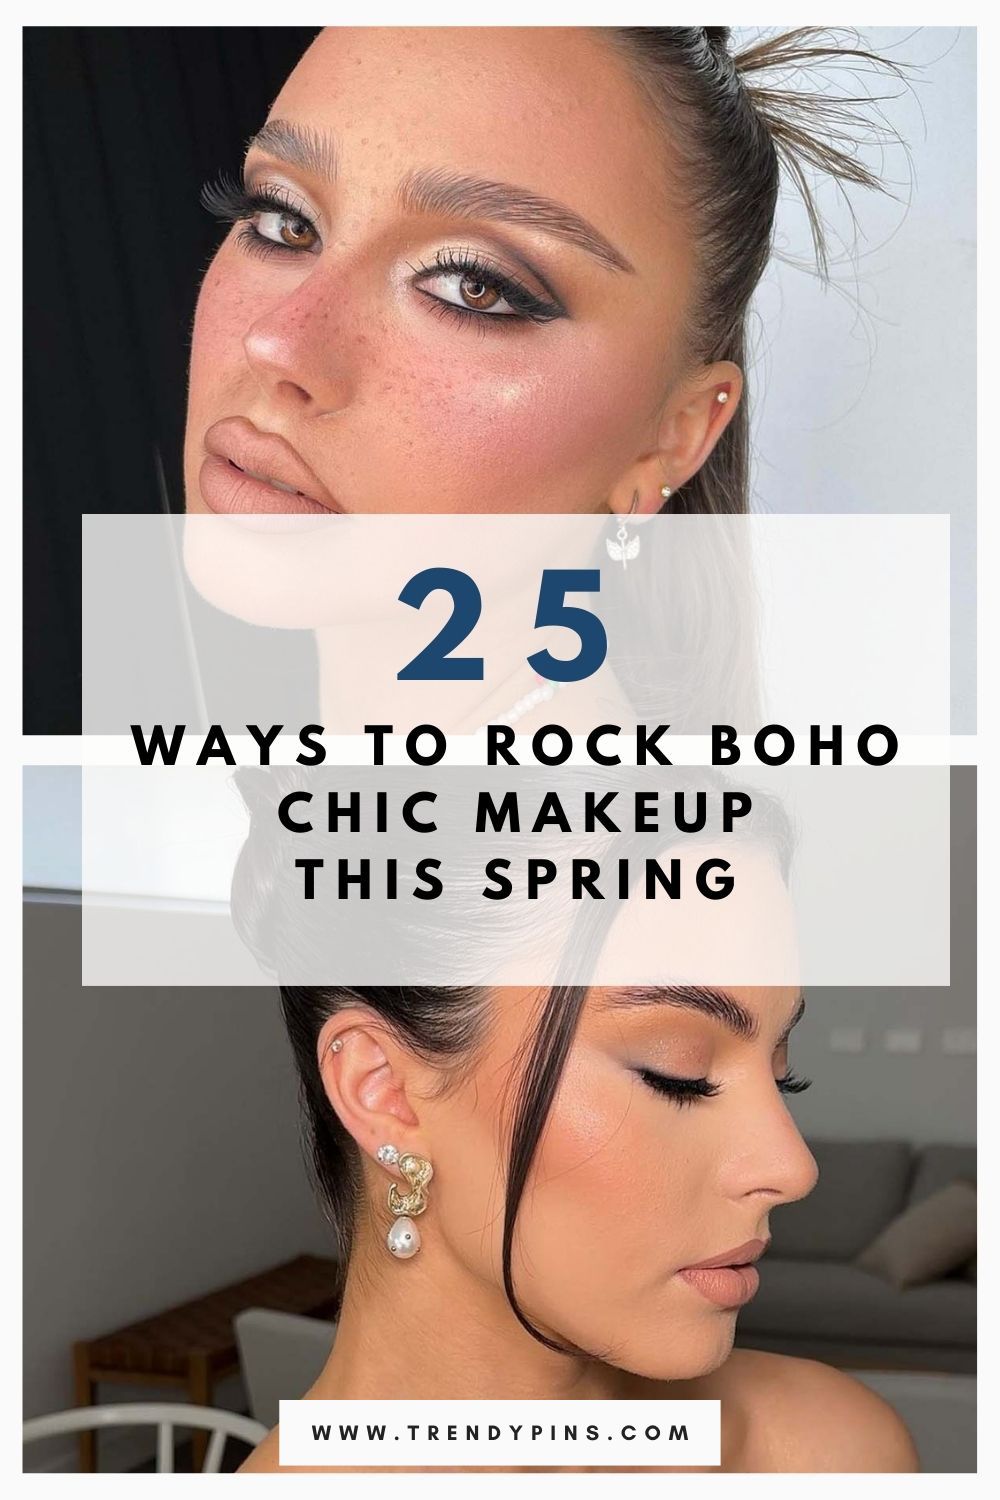 Boho Chic Spring Makeup Ideas 4